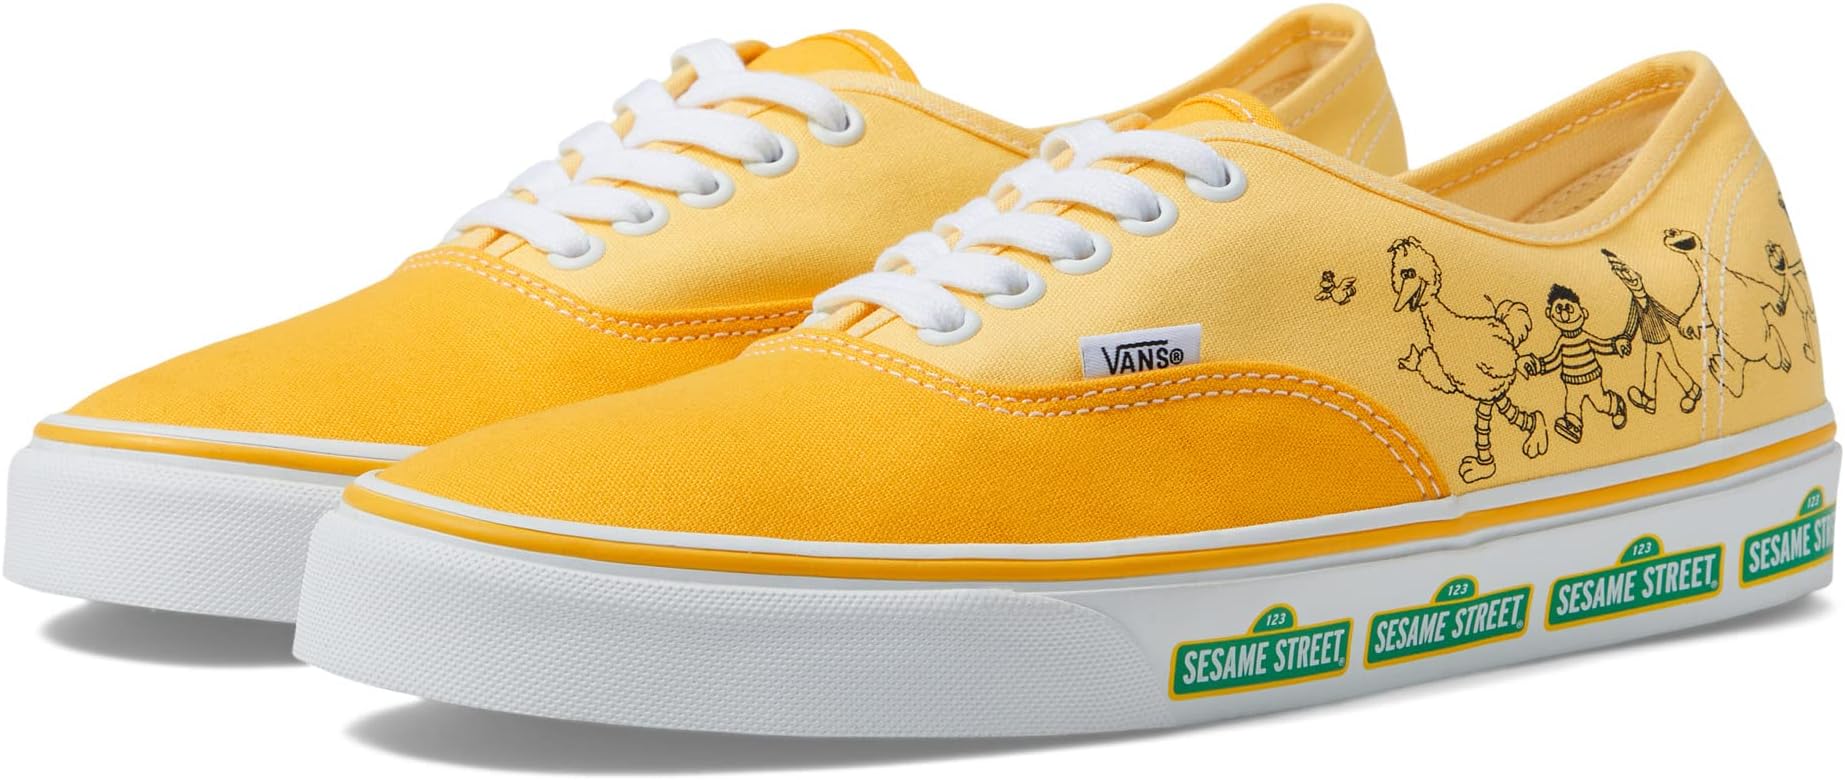 Кроссовки Authentic Vans, цвет Sesame Street Yellow